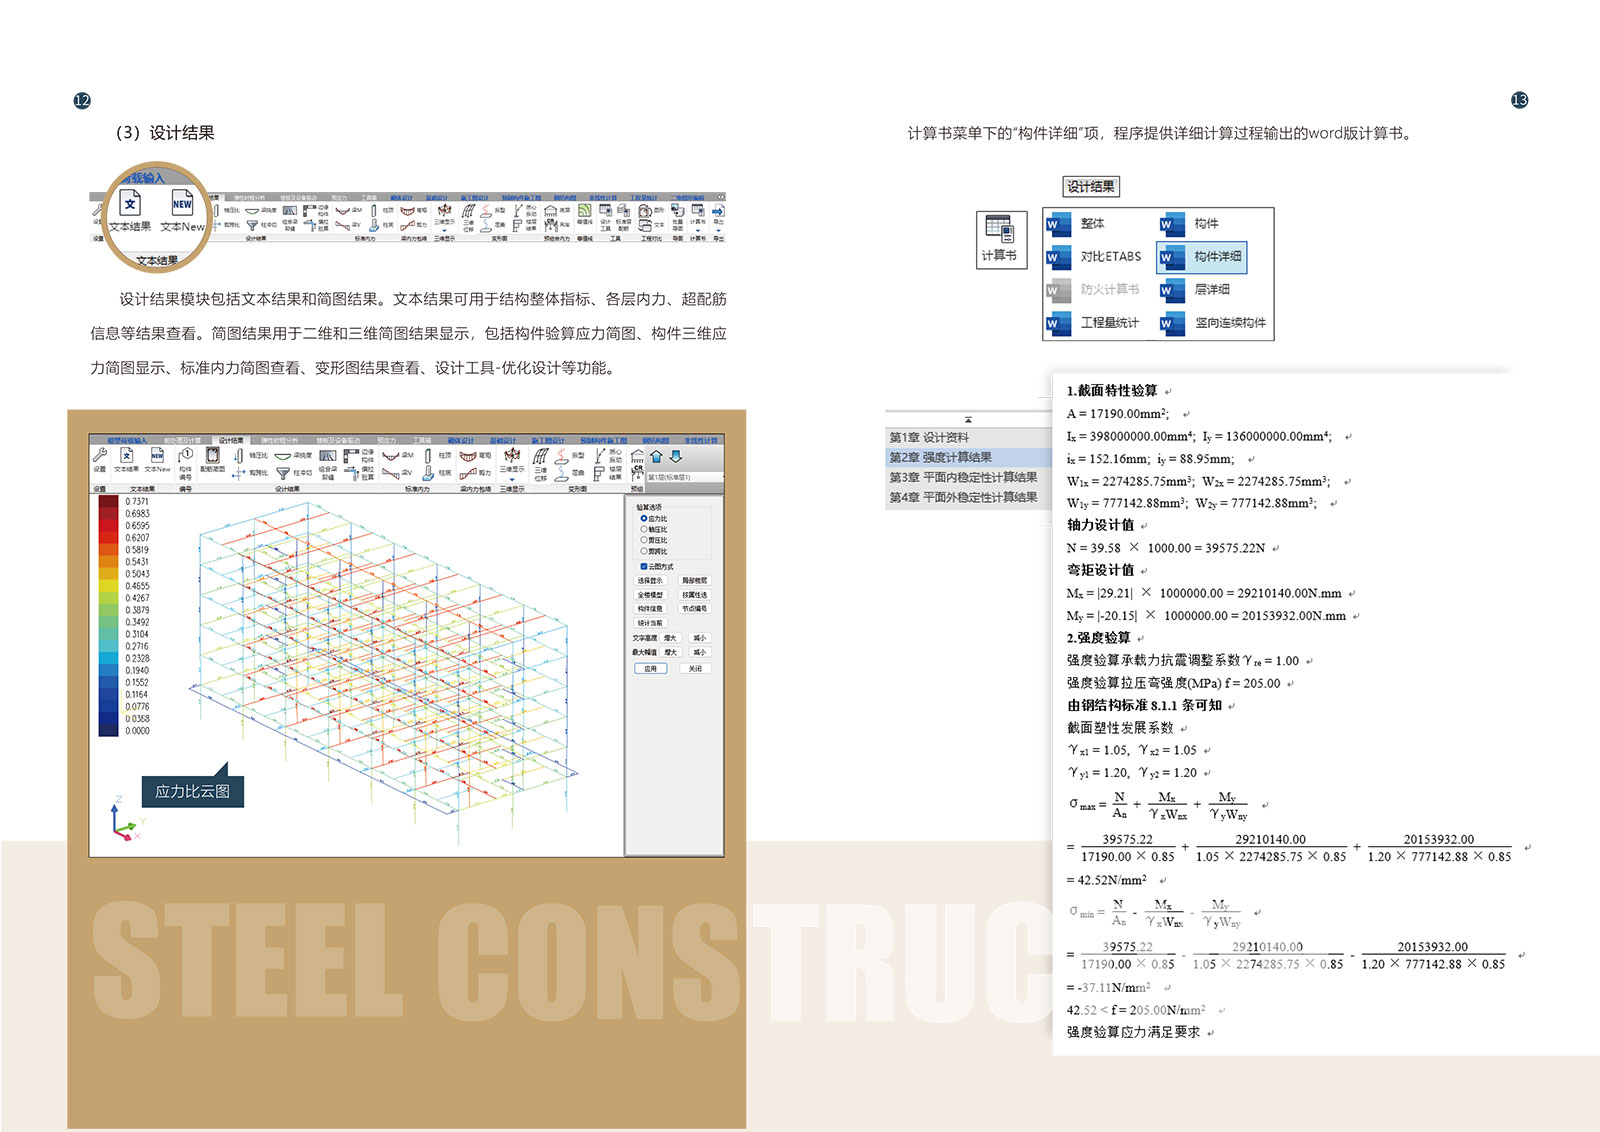 盈建科钢结构设计软件彩页-8.jpg